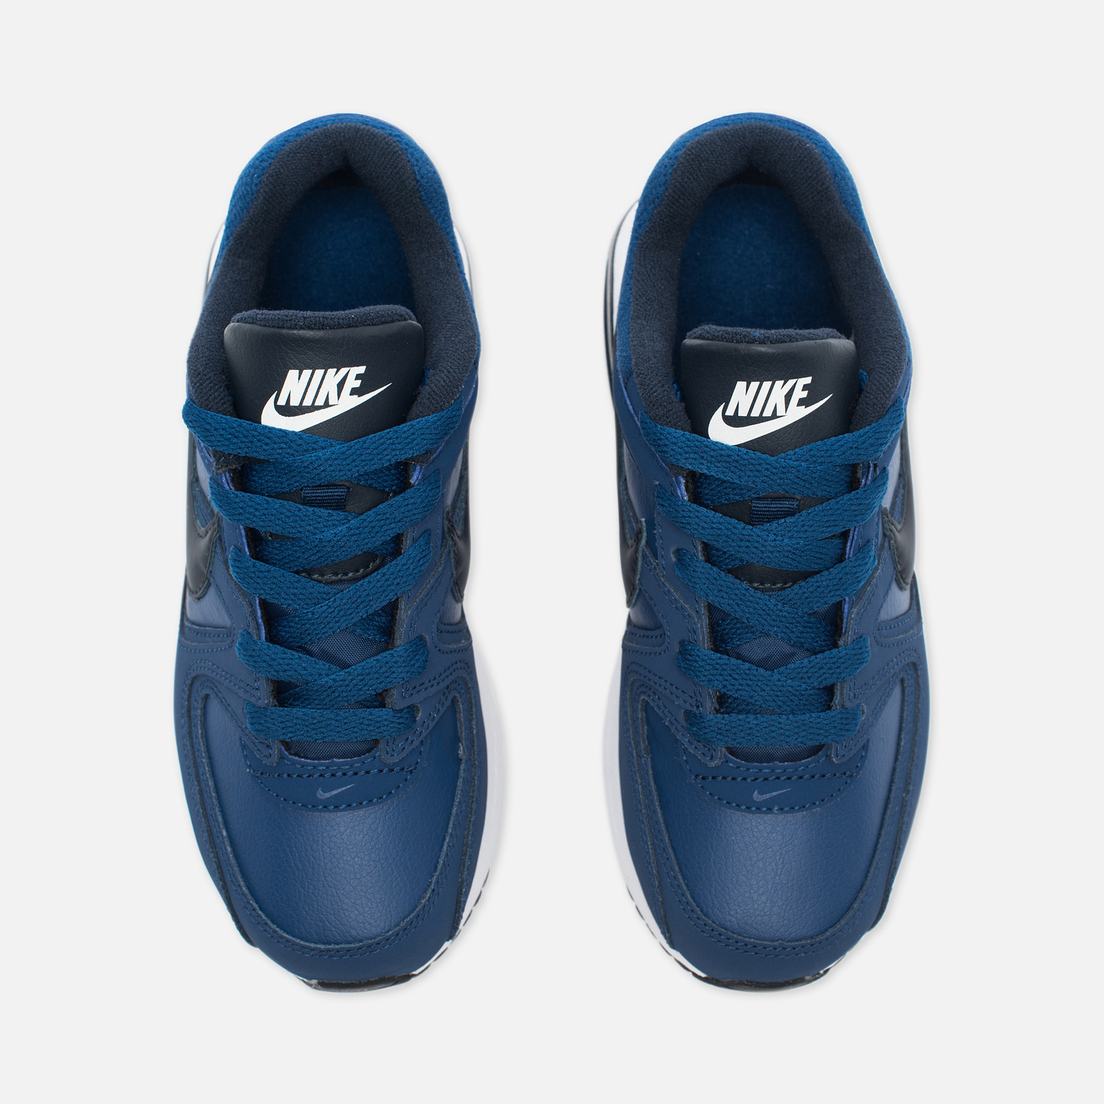 Nike Детские кроссовки Air Max Command Flex Leather